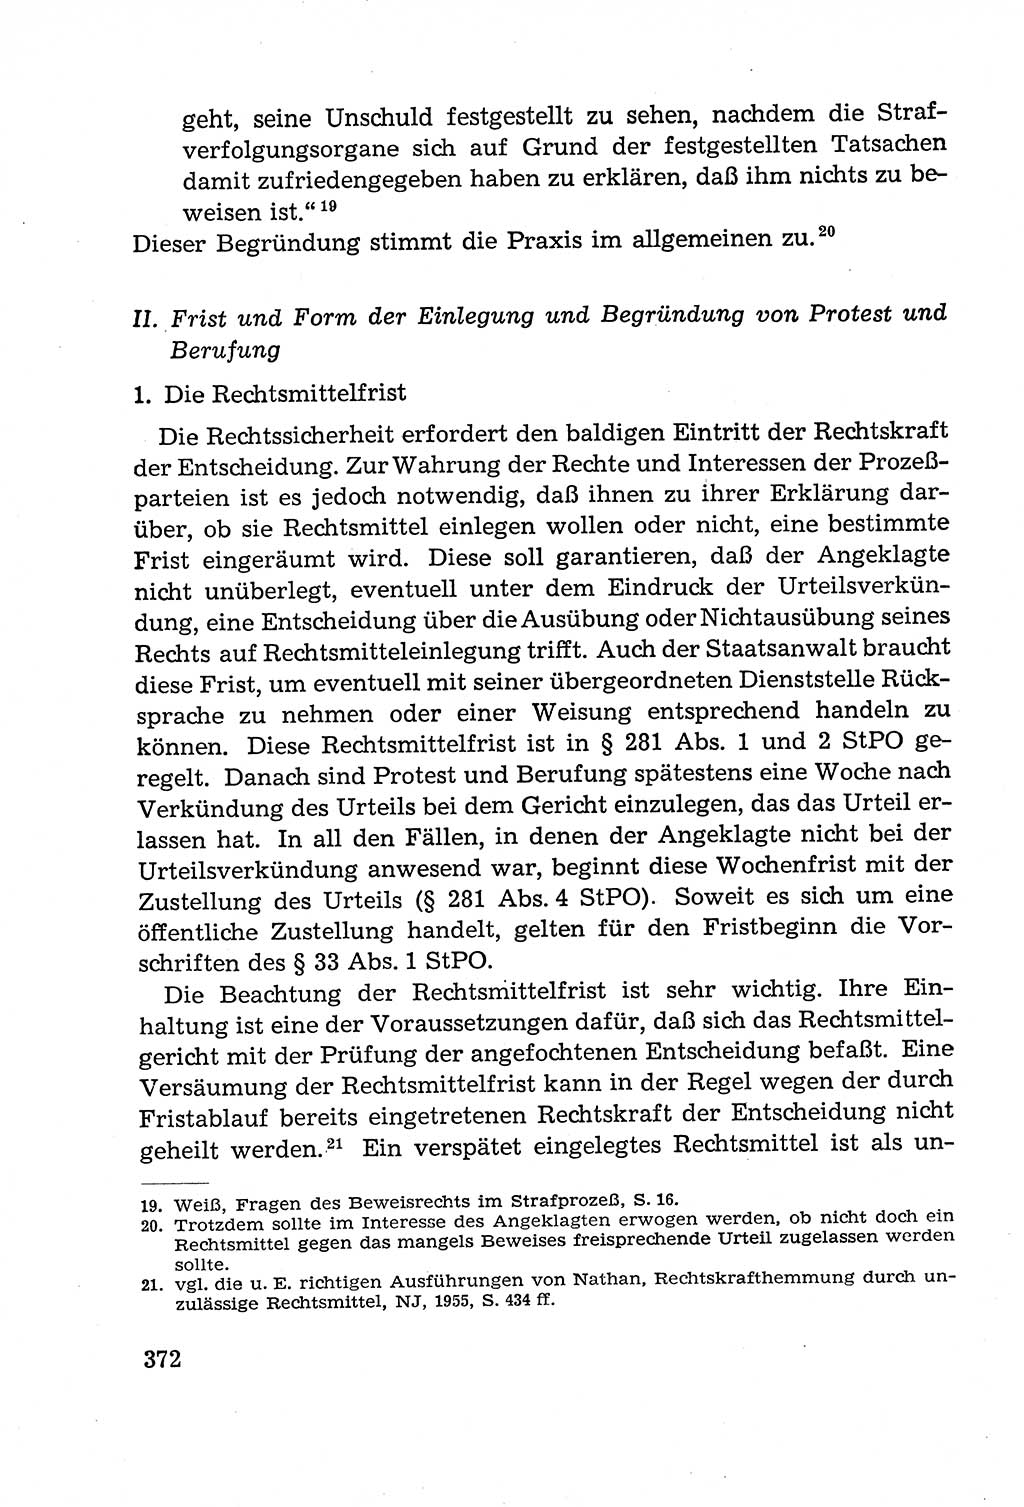 Leitfaden des Strafprozeßrechts der Deutschen Demokratischen Republik (DDR) 1959, Seite 372 (LF StPR DDR 1959, S. 372)